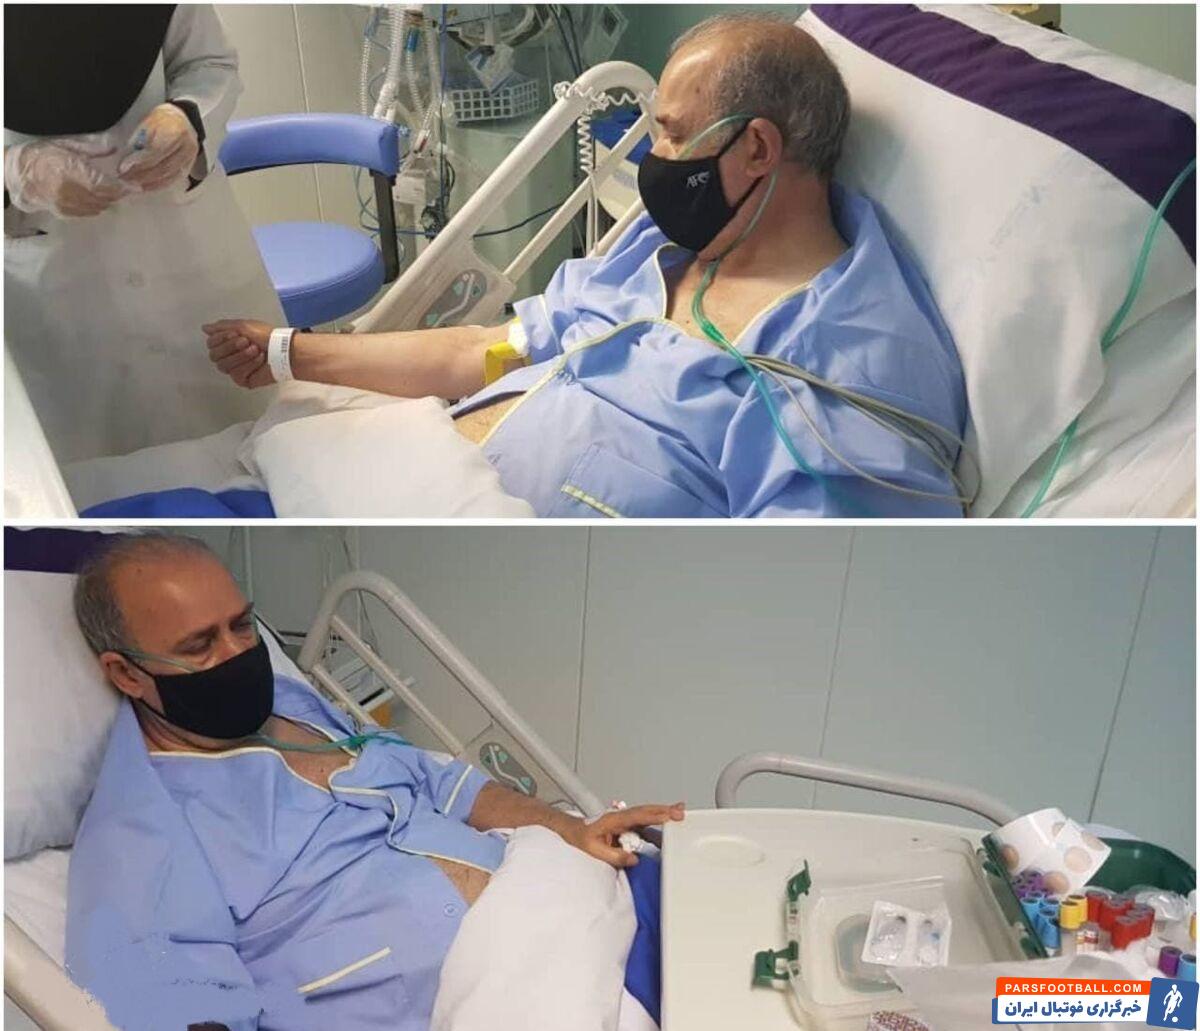 مهدی تاج ، رئیس سابق فدراسیون فوتبال شب گذشته به دلیل مشکل قلبی در بیمارستان ایران‌مهر تهران بستری شد.‌‌‌‌‌‌‌‌‌‌‌‌‌‌‌‌‌‌‌‌‌‌‌‌‌‌‌‌‌‌‌‌‌‌